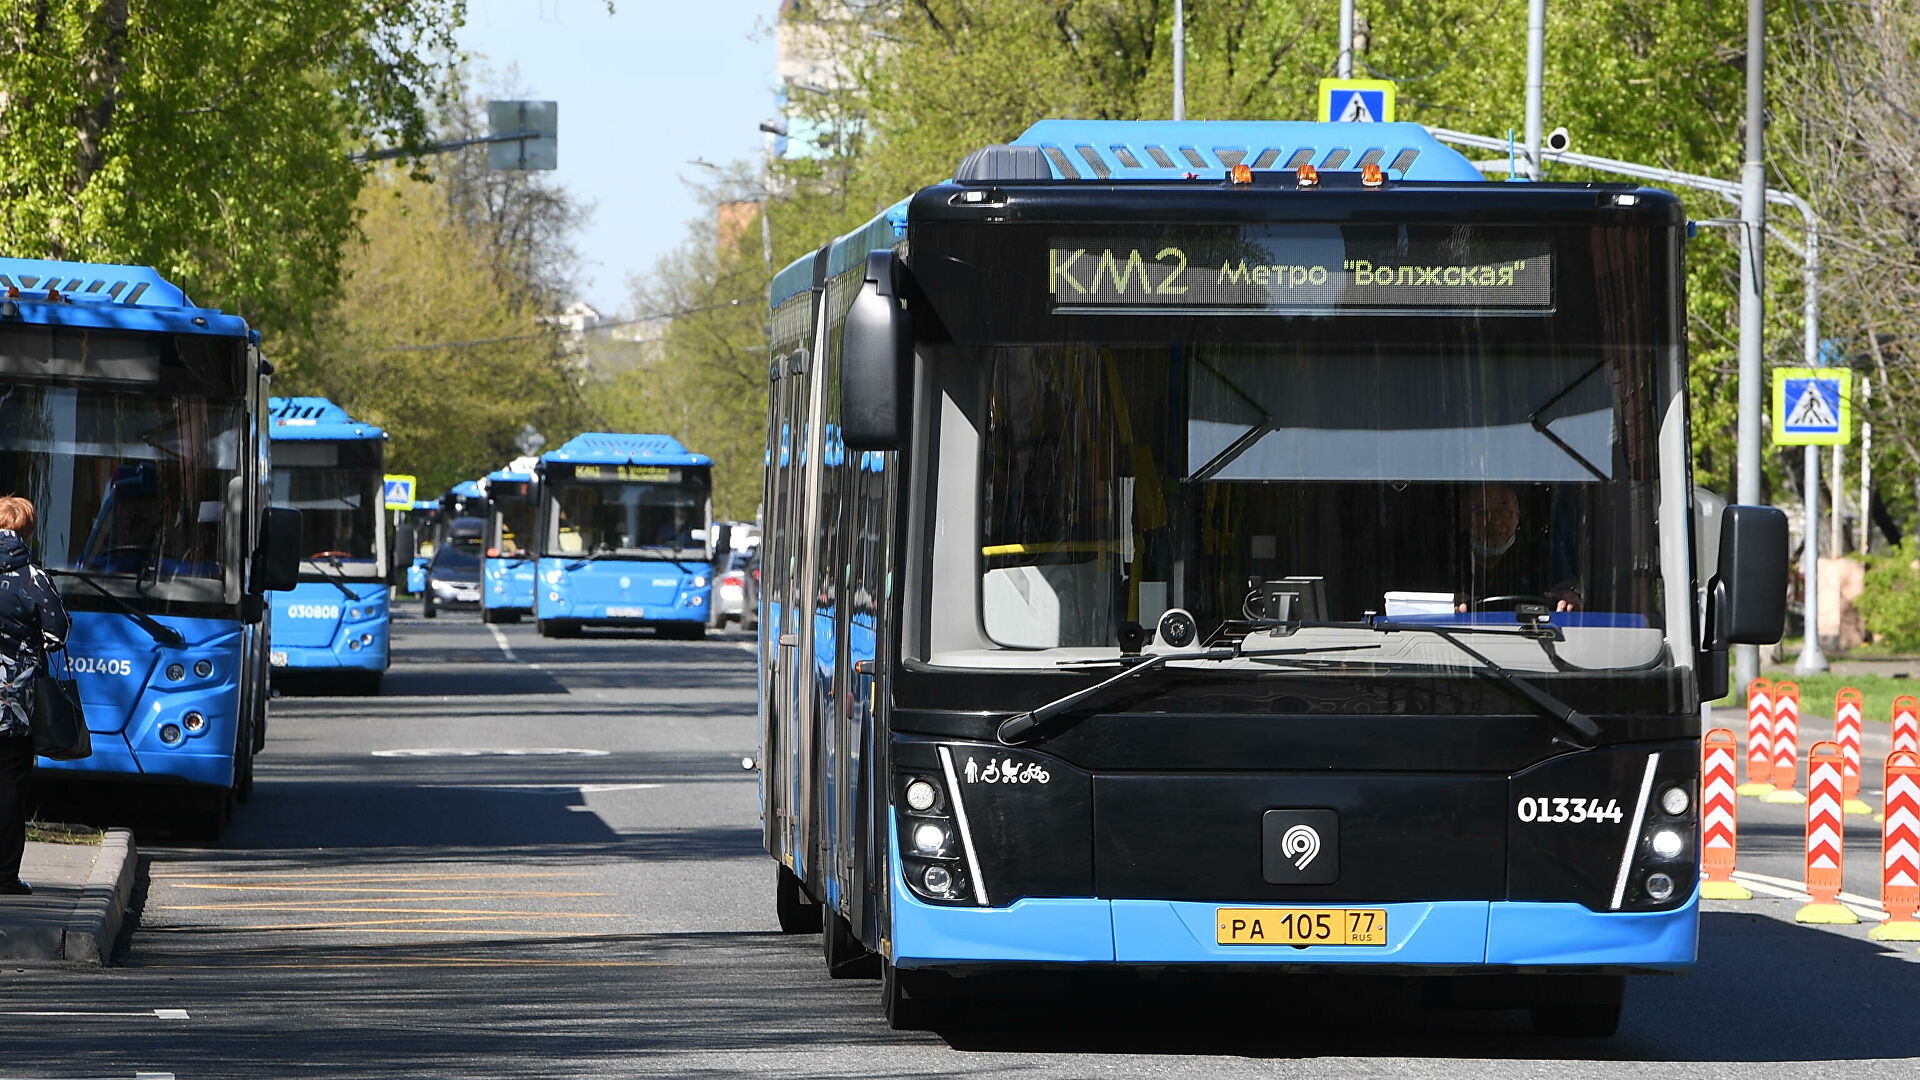 ОНФ выявил нарушения при организации работы общественного транспорта 